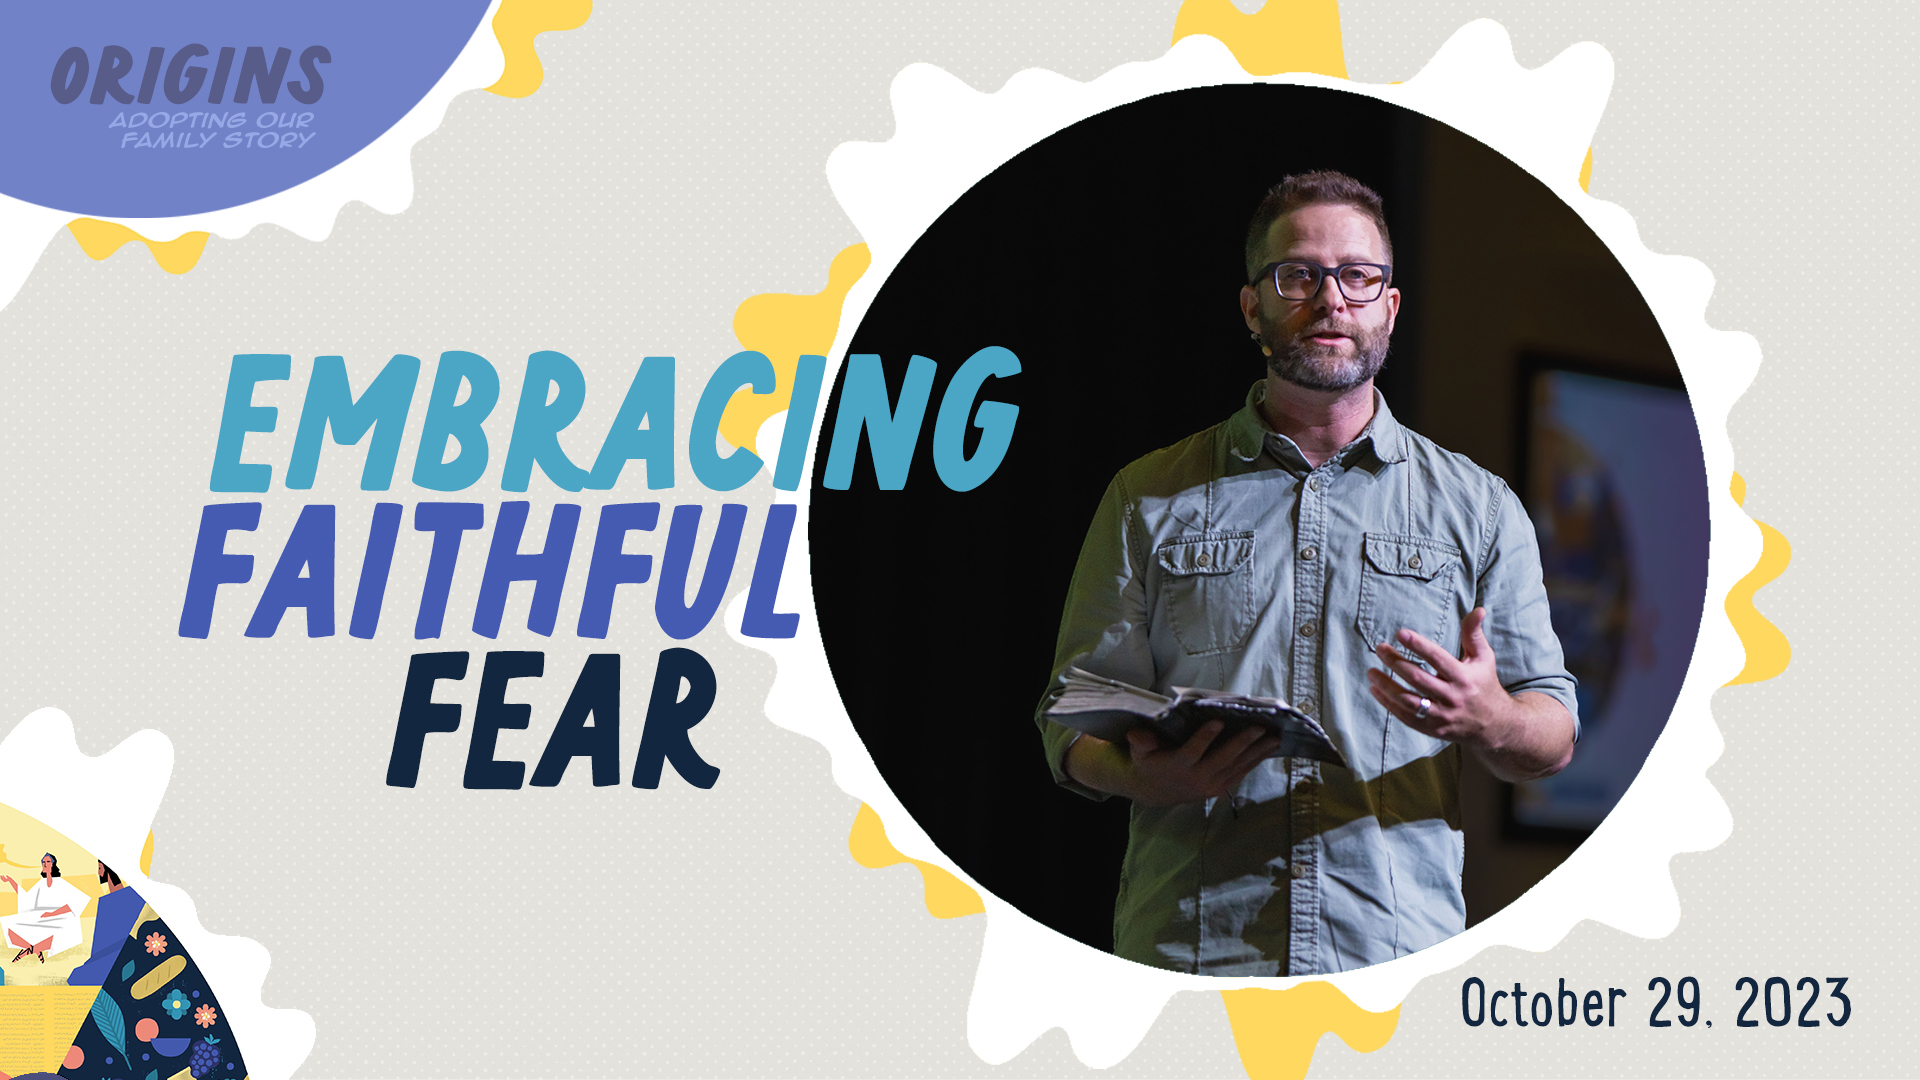 Embracing Faithful Fear